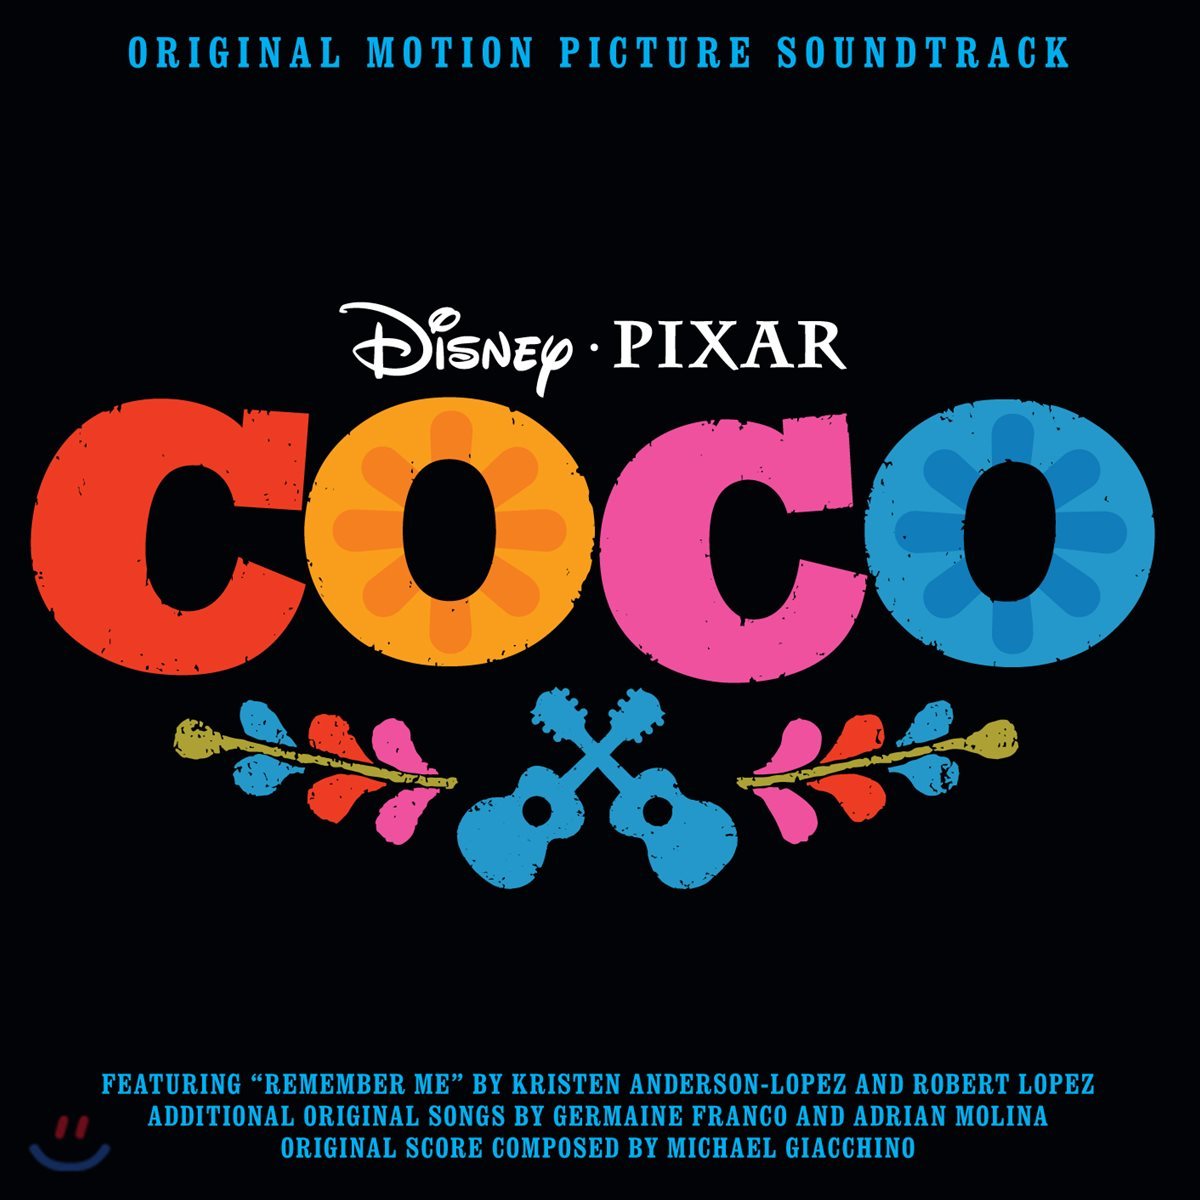 코코 애니메이션 음악 (Coco OST by Michael Giacchino 마이클 지아치노)